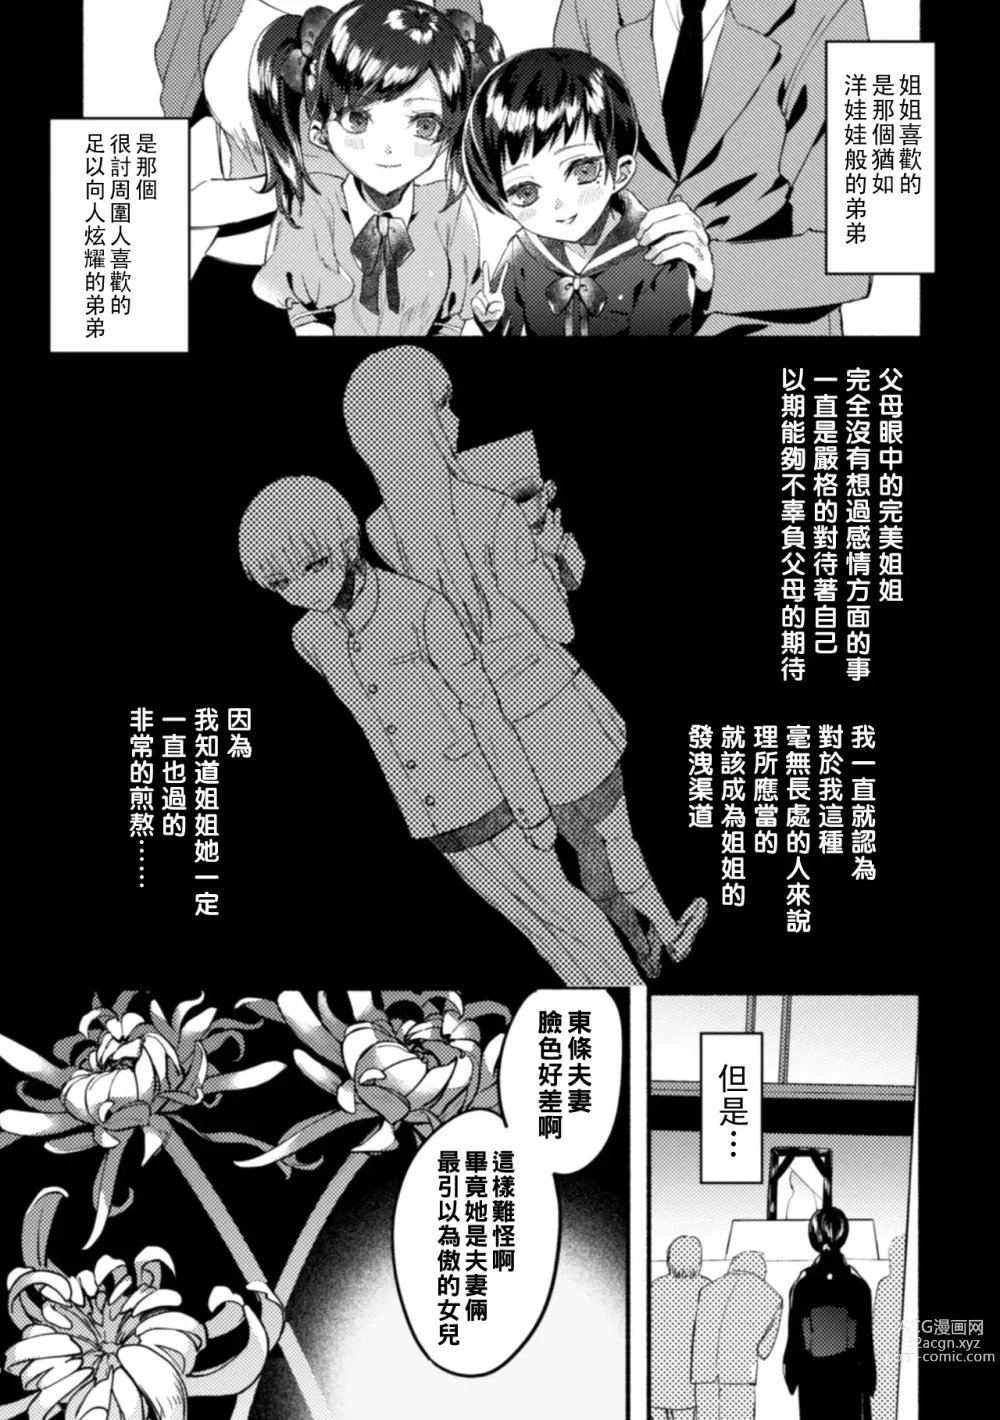 Page 5 of manga 割れた鏡（Chinese）